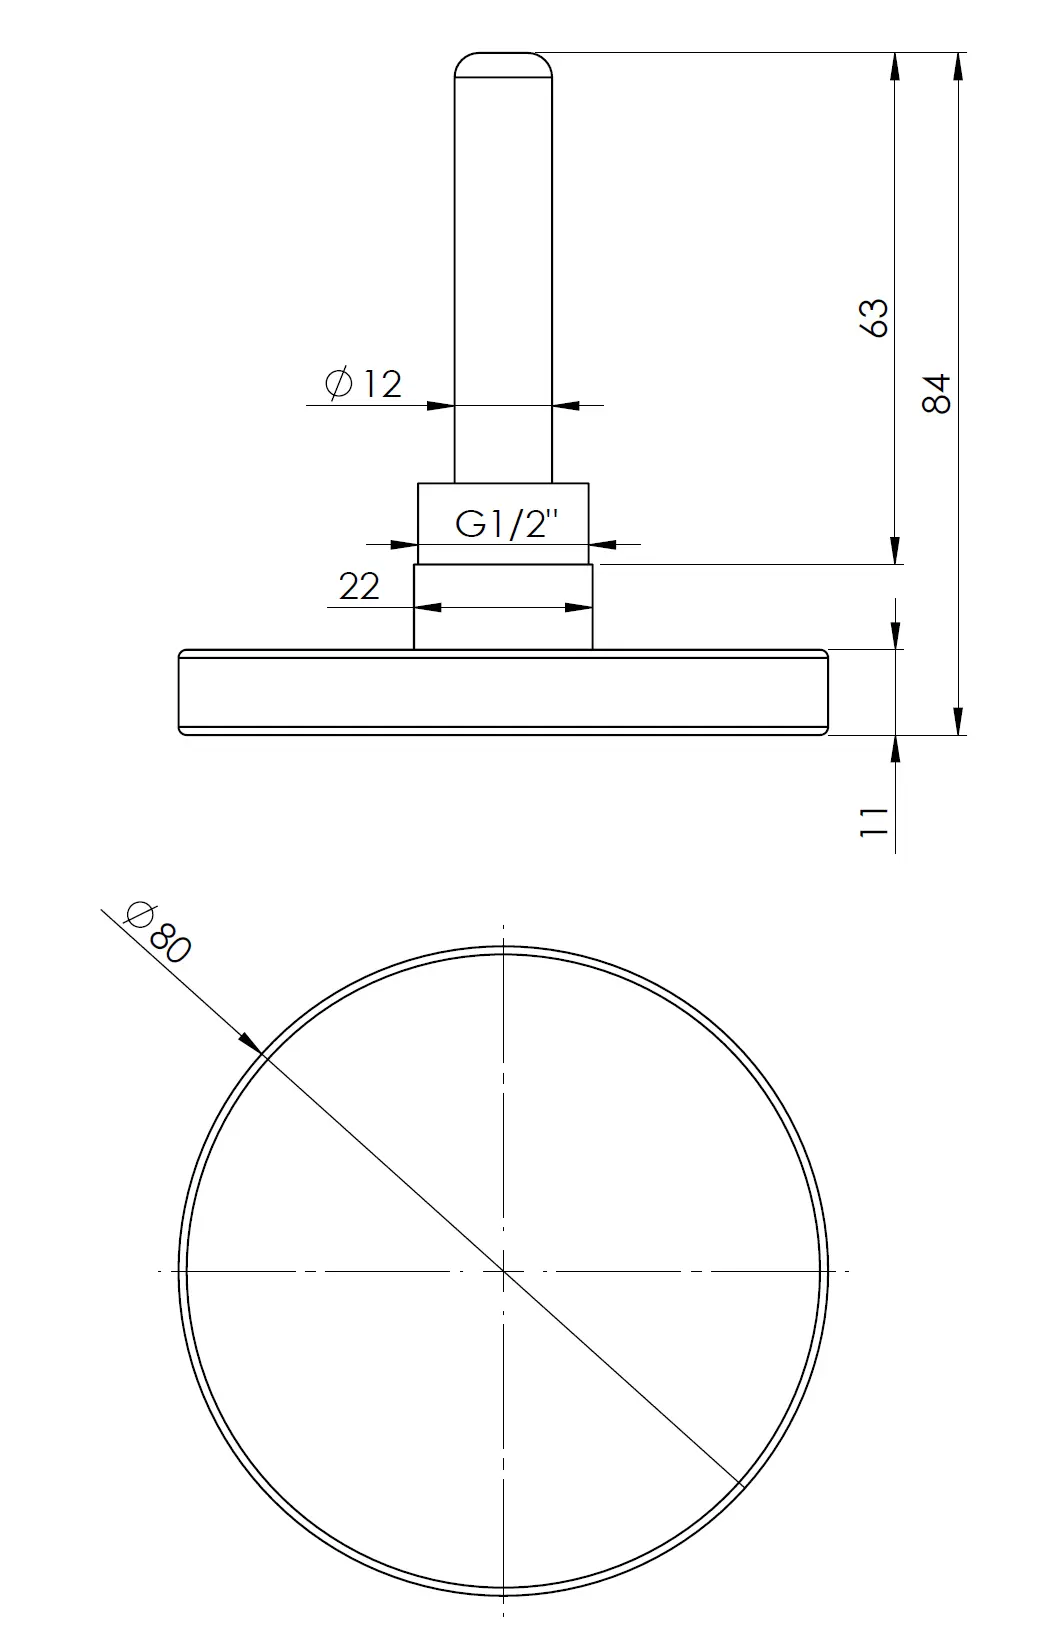 Termometr bimetaliczny BiTh 80, fi80 mm, -20÷60°C, L 63 mm, G1/2", ax, kl. 2 - budowa